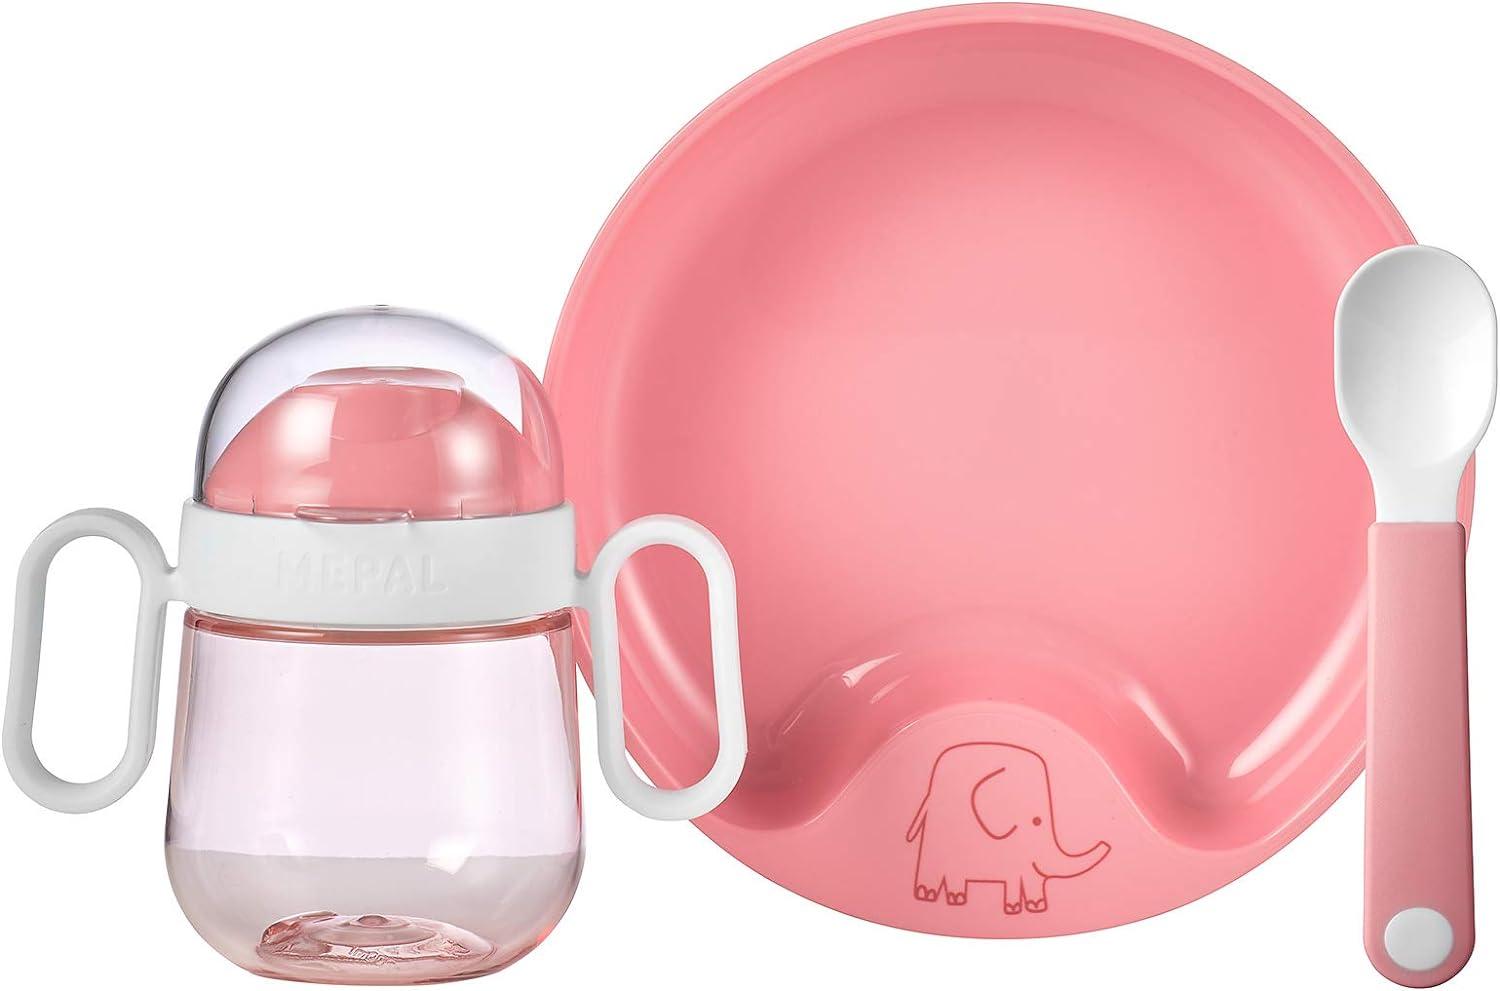 Mepal MIO Babygeschirrset deep pink 3-teilig - A Bild 1